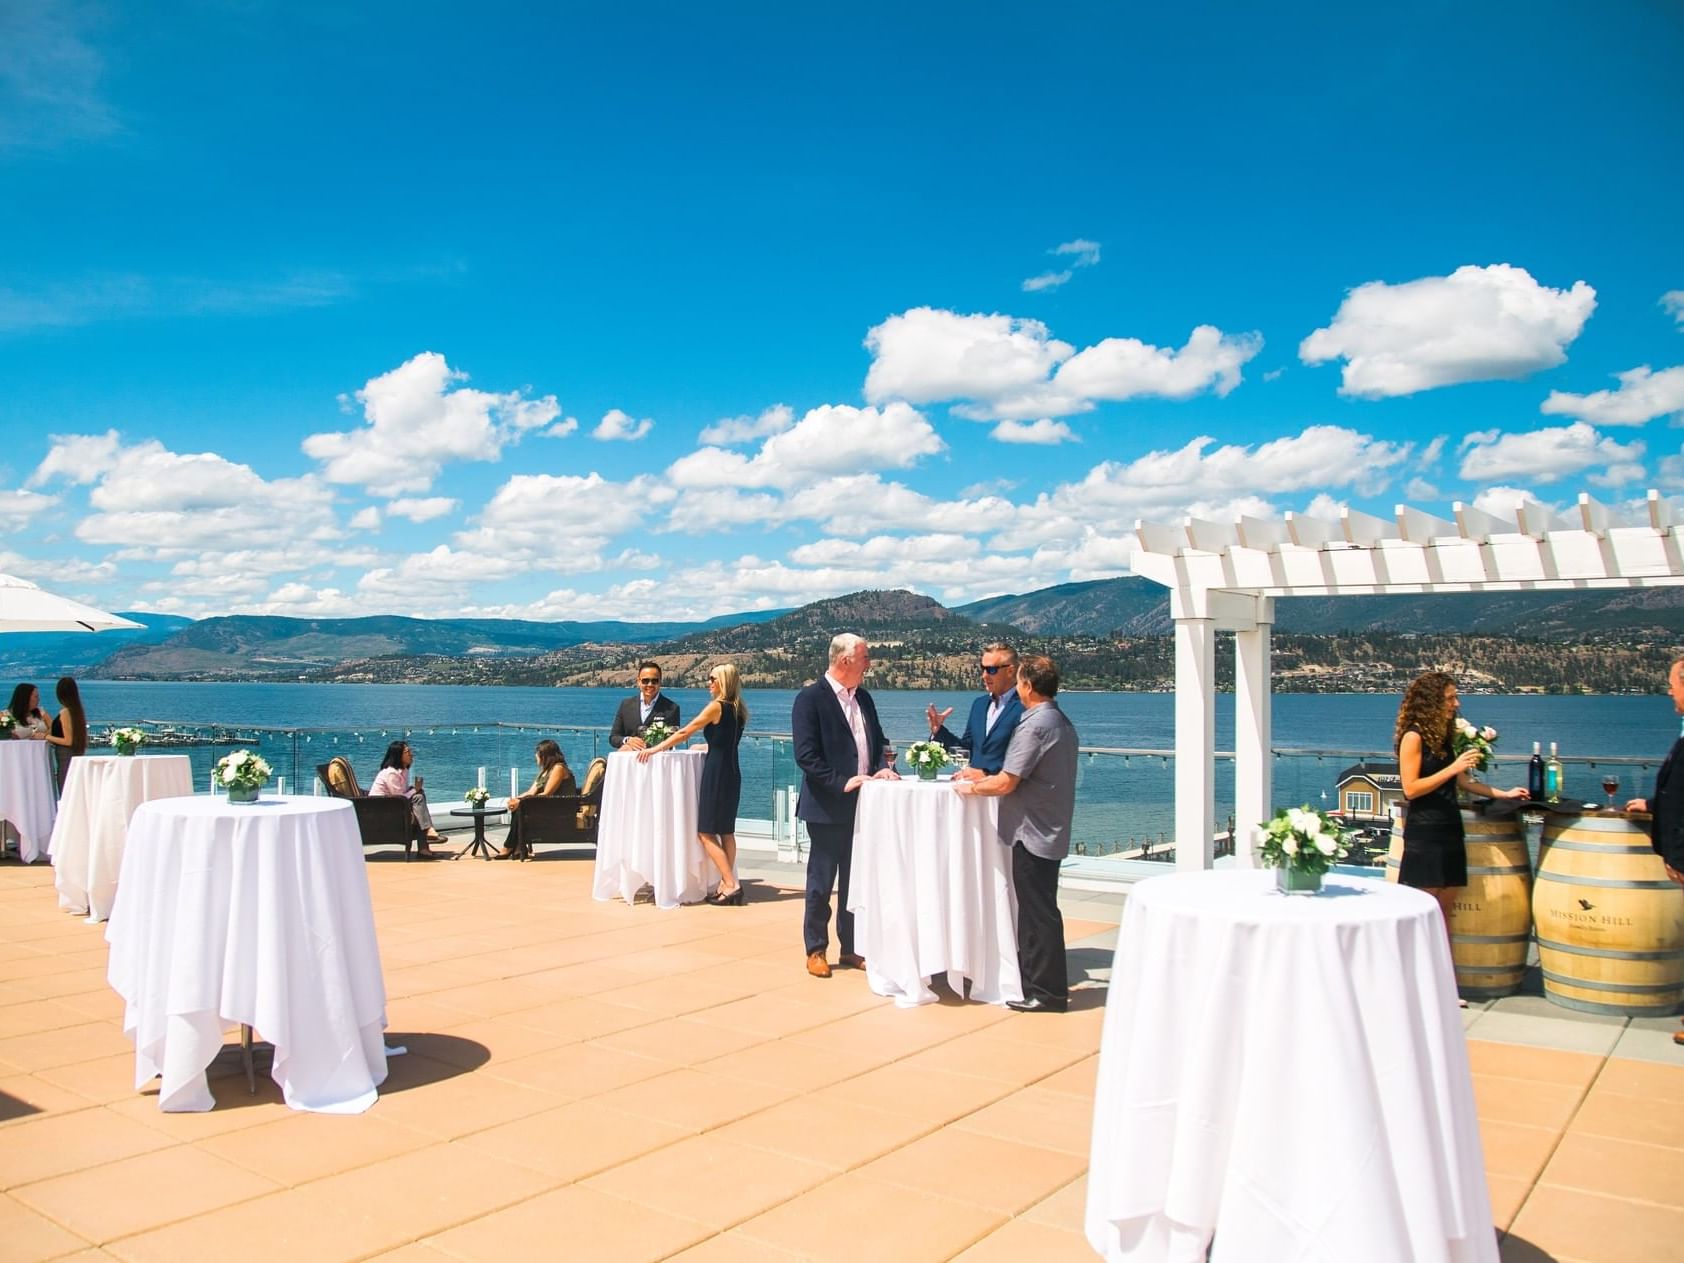 Wedding arrangements in the Sun Roof, Manteo Resort Waterfront